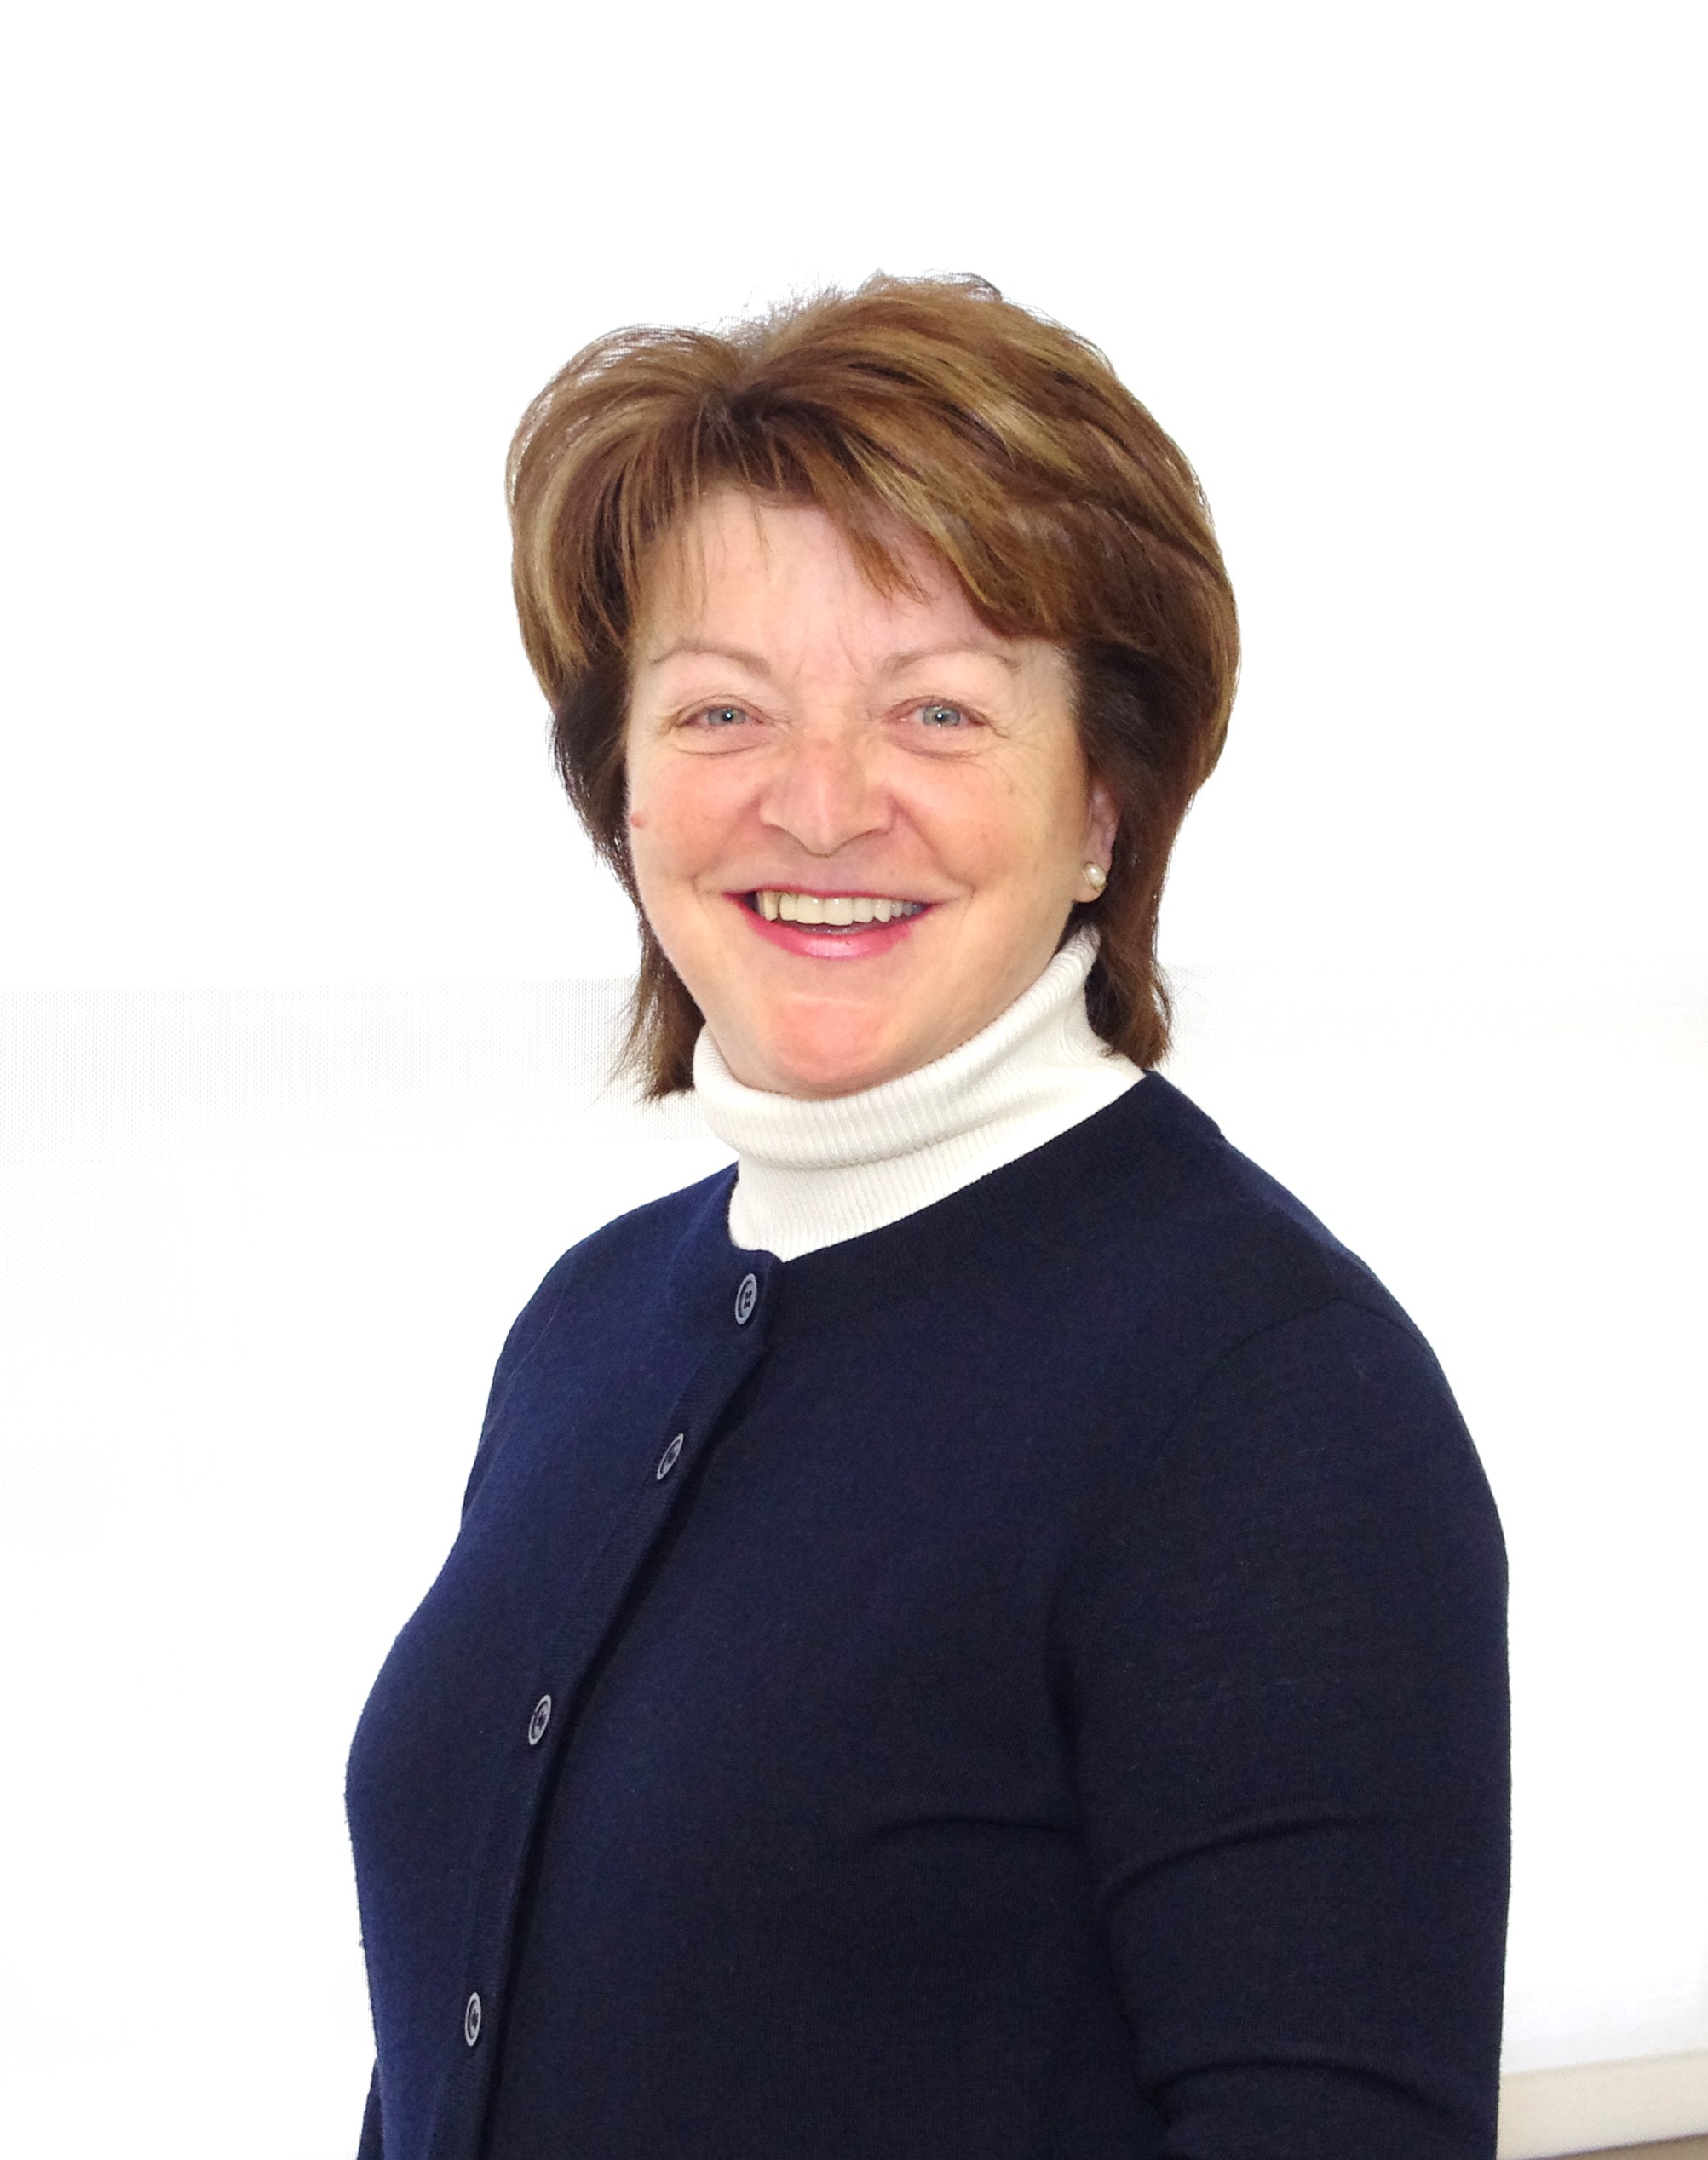 Denise Leclerc - Mentor d'entrepreneurs pour la région nord du Québec - Centre d'entrepreneurship nordique